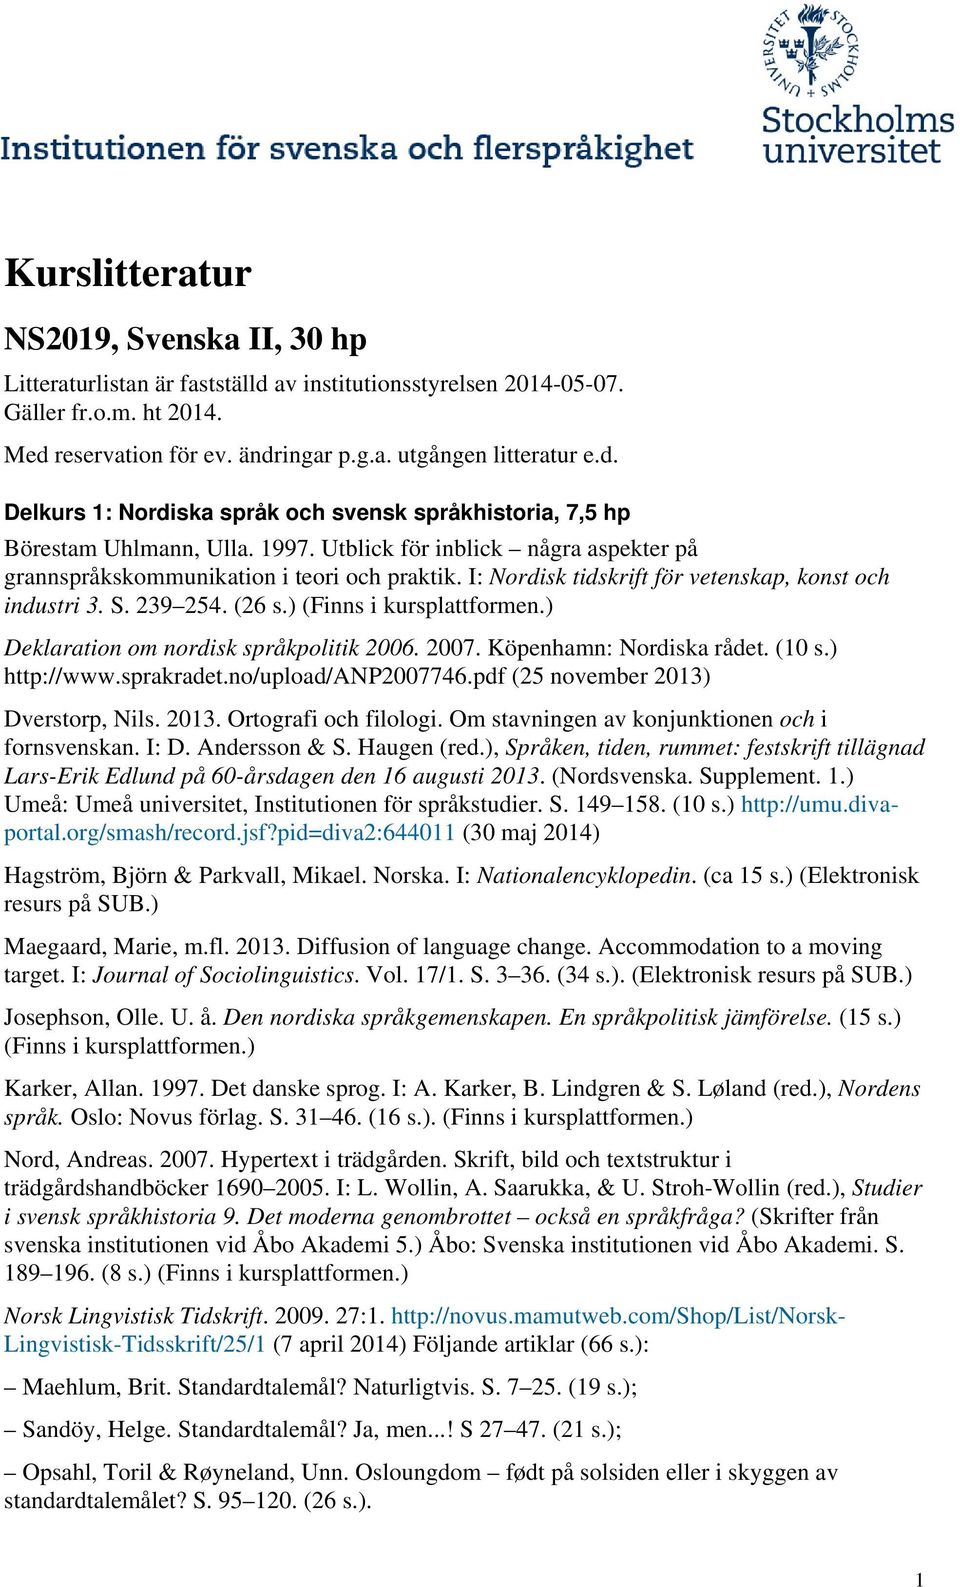 ) (Finns i Deklaration om nordisk språkpolitik 2006. 2007. Köpenhamn: Nordiska rådet. (10 s.) http://www.sprakradet.no/upload/anp2007746.pdf (25 november 2013) Dverstorp, Nils. 2013. Ortografi och filologi.